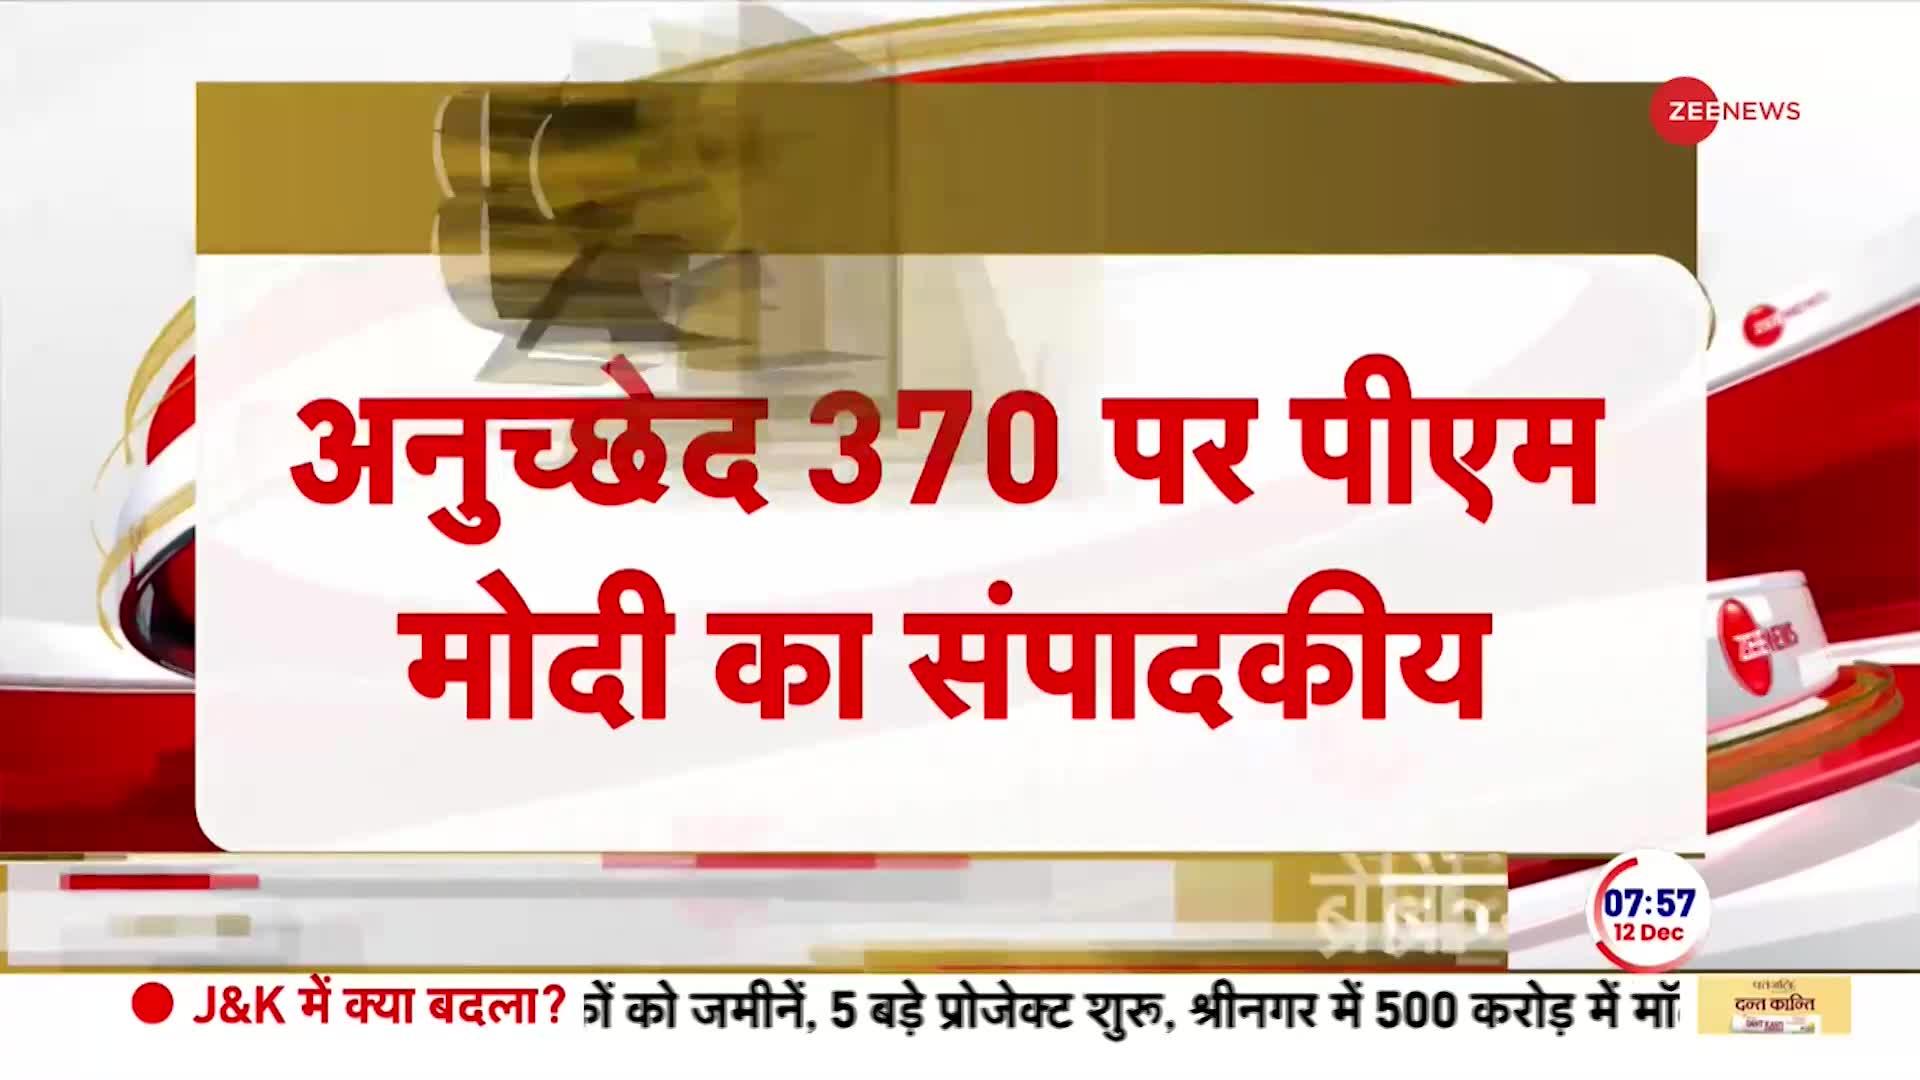 Article 370 News: 'हमने लोगों की चिंताओं का समाधान किया' PM Modi | Breaking | SC